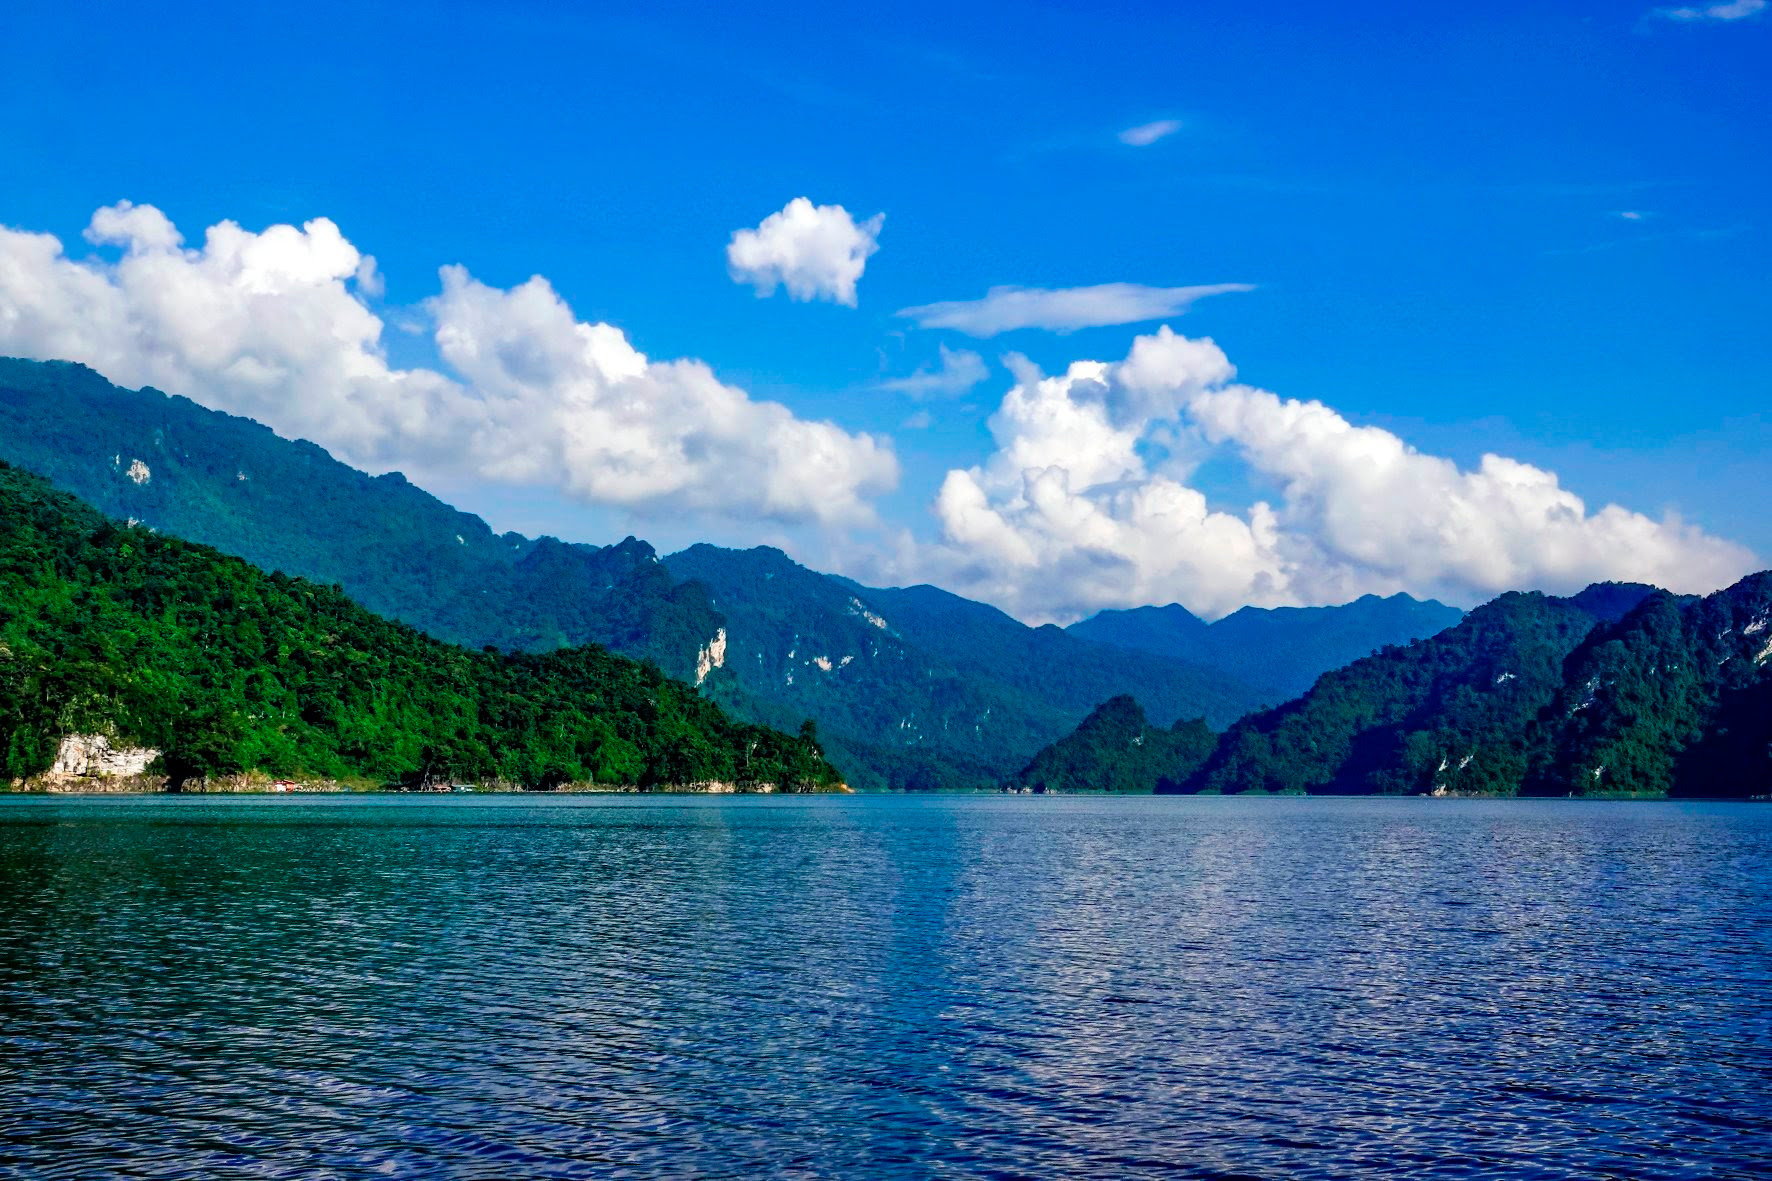 Hồ nước ngọt nhân tạo lớn nhất Tuyên Quang hiện ra đẹp như phim, có ngọn thác đổ, rừng nguyên sinh - Ảnh 3.